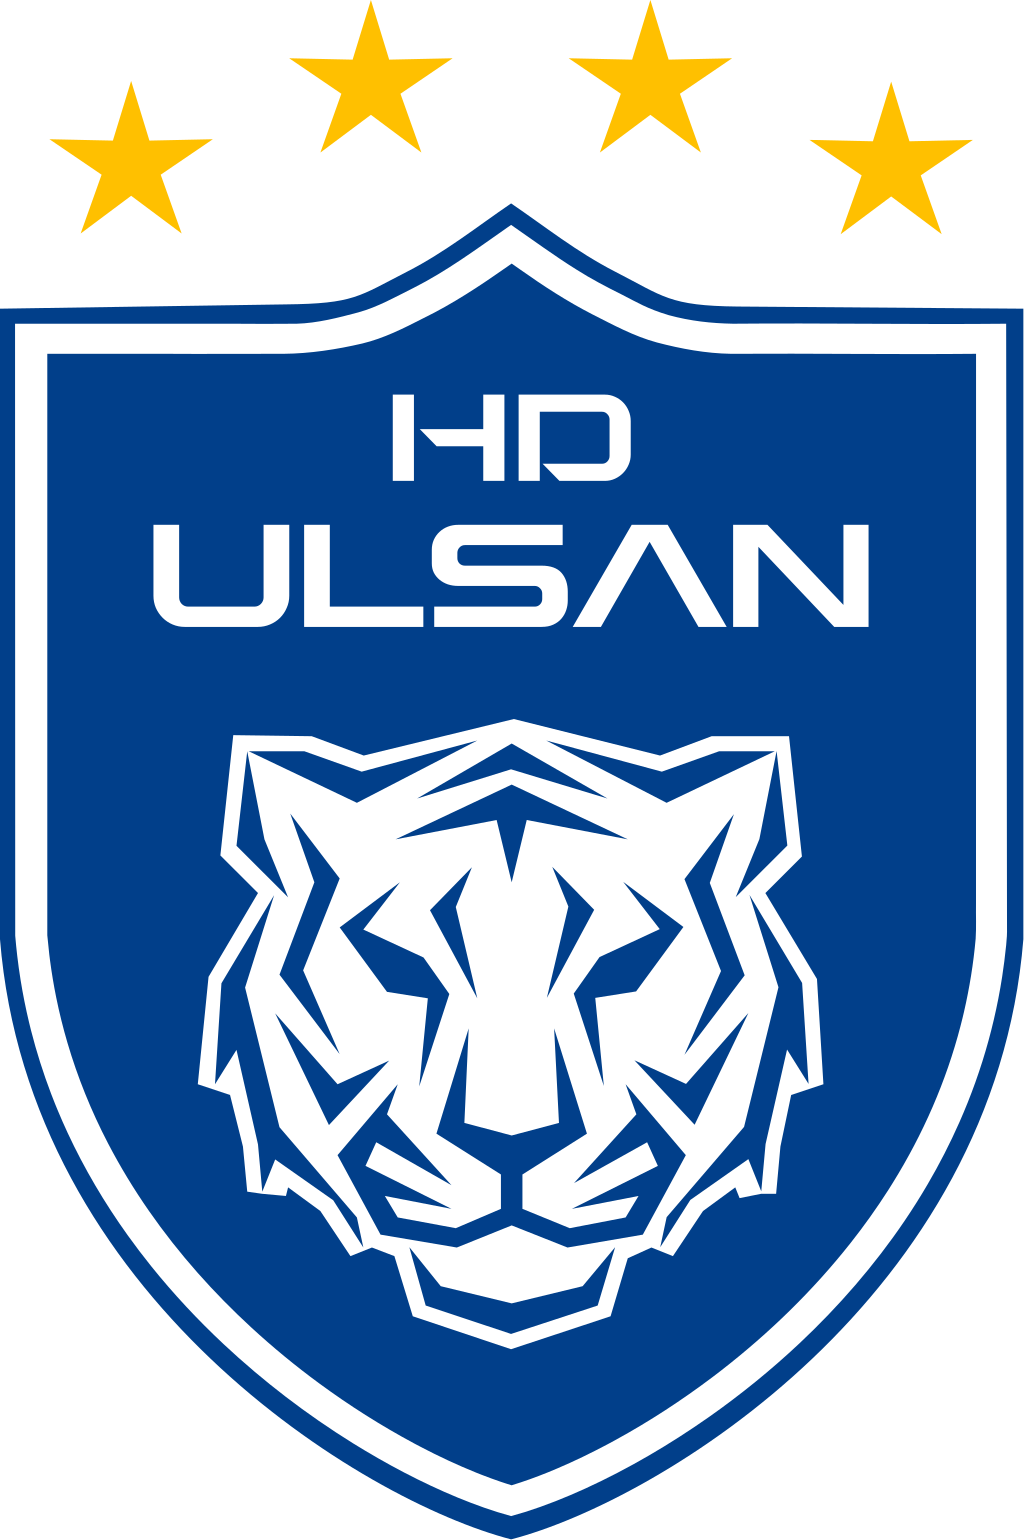 Wappen Ulsan HD FC  7354